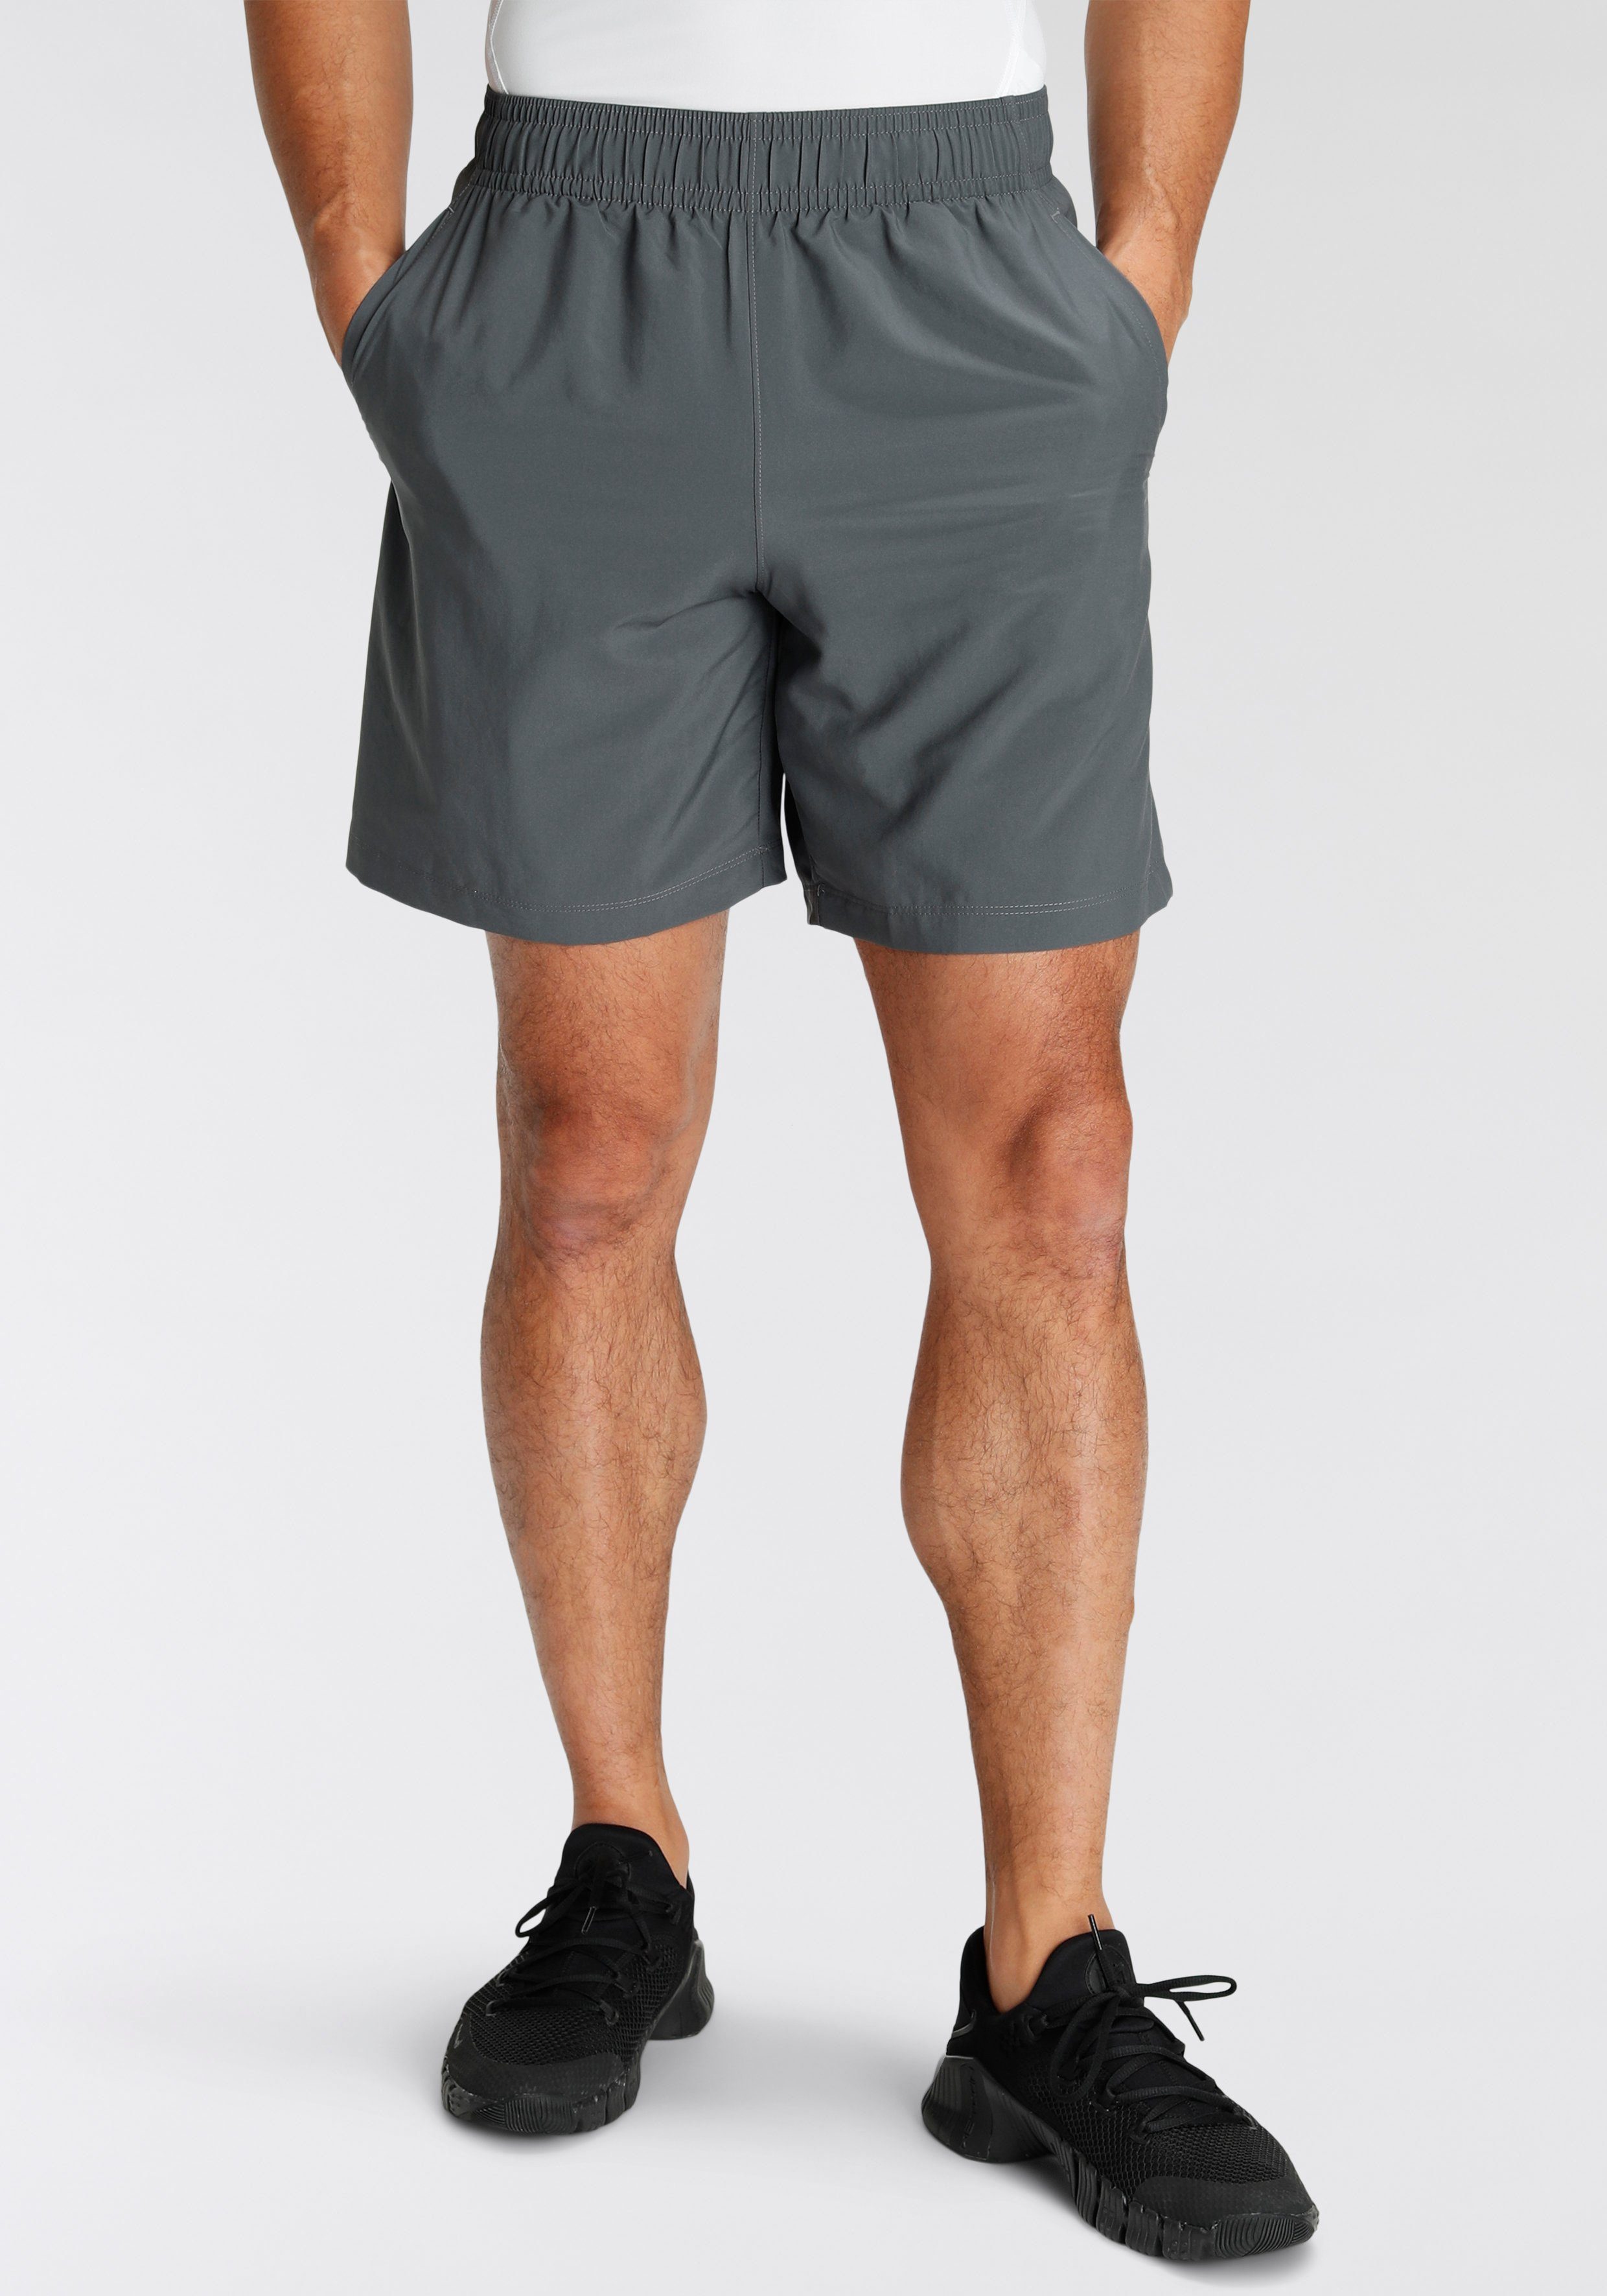 Sportliche Kurze Hosen kaufen » Sport Kurze Hosen | OTTO